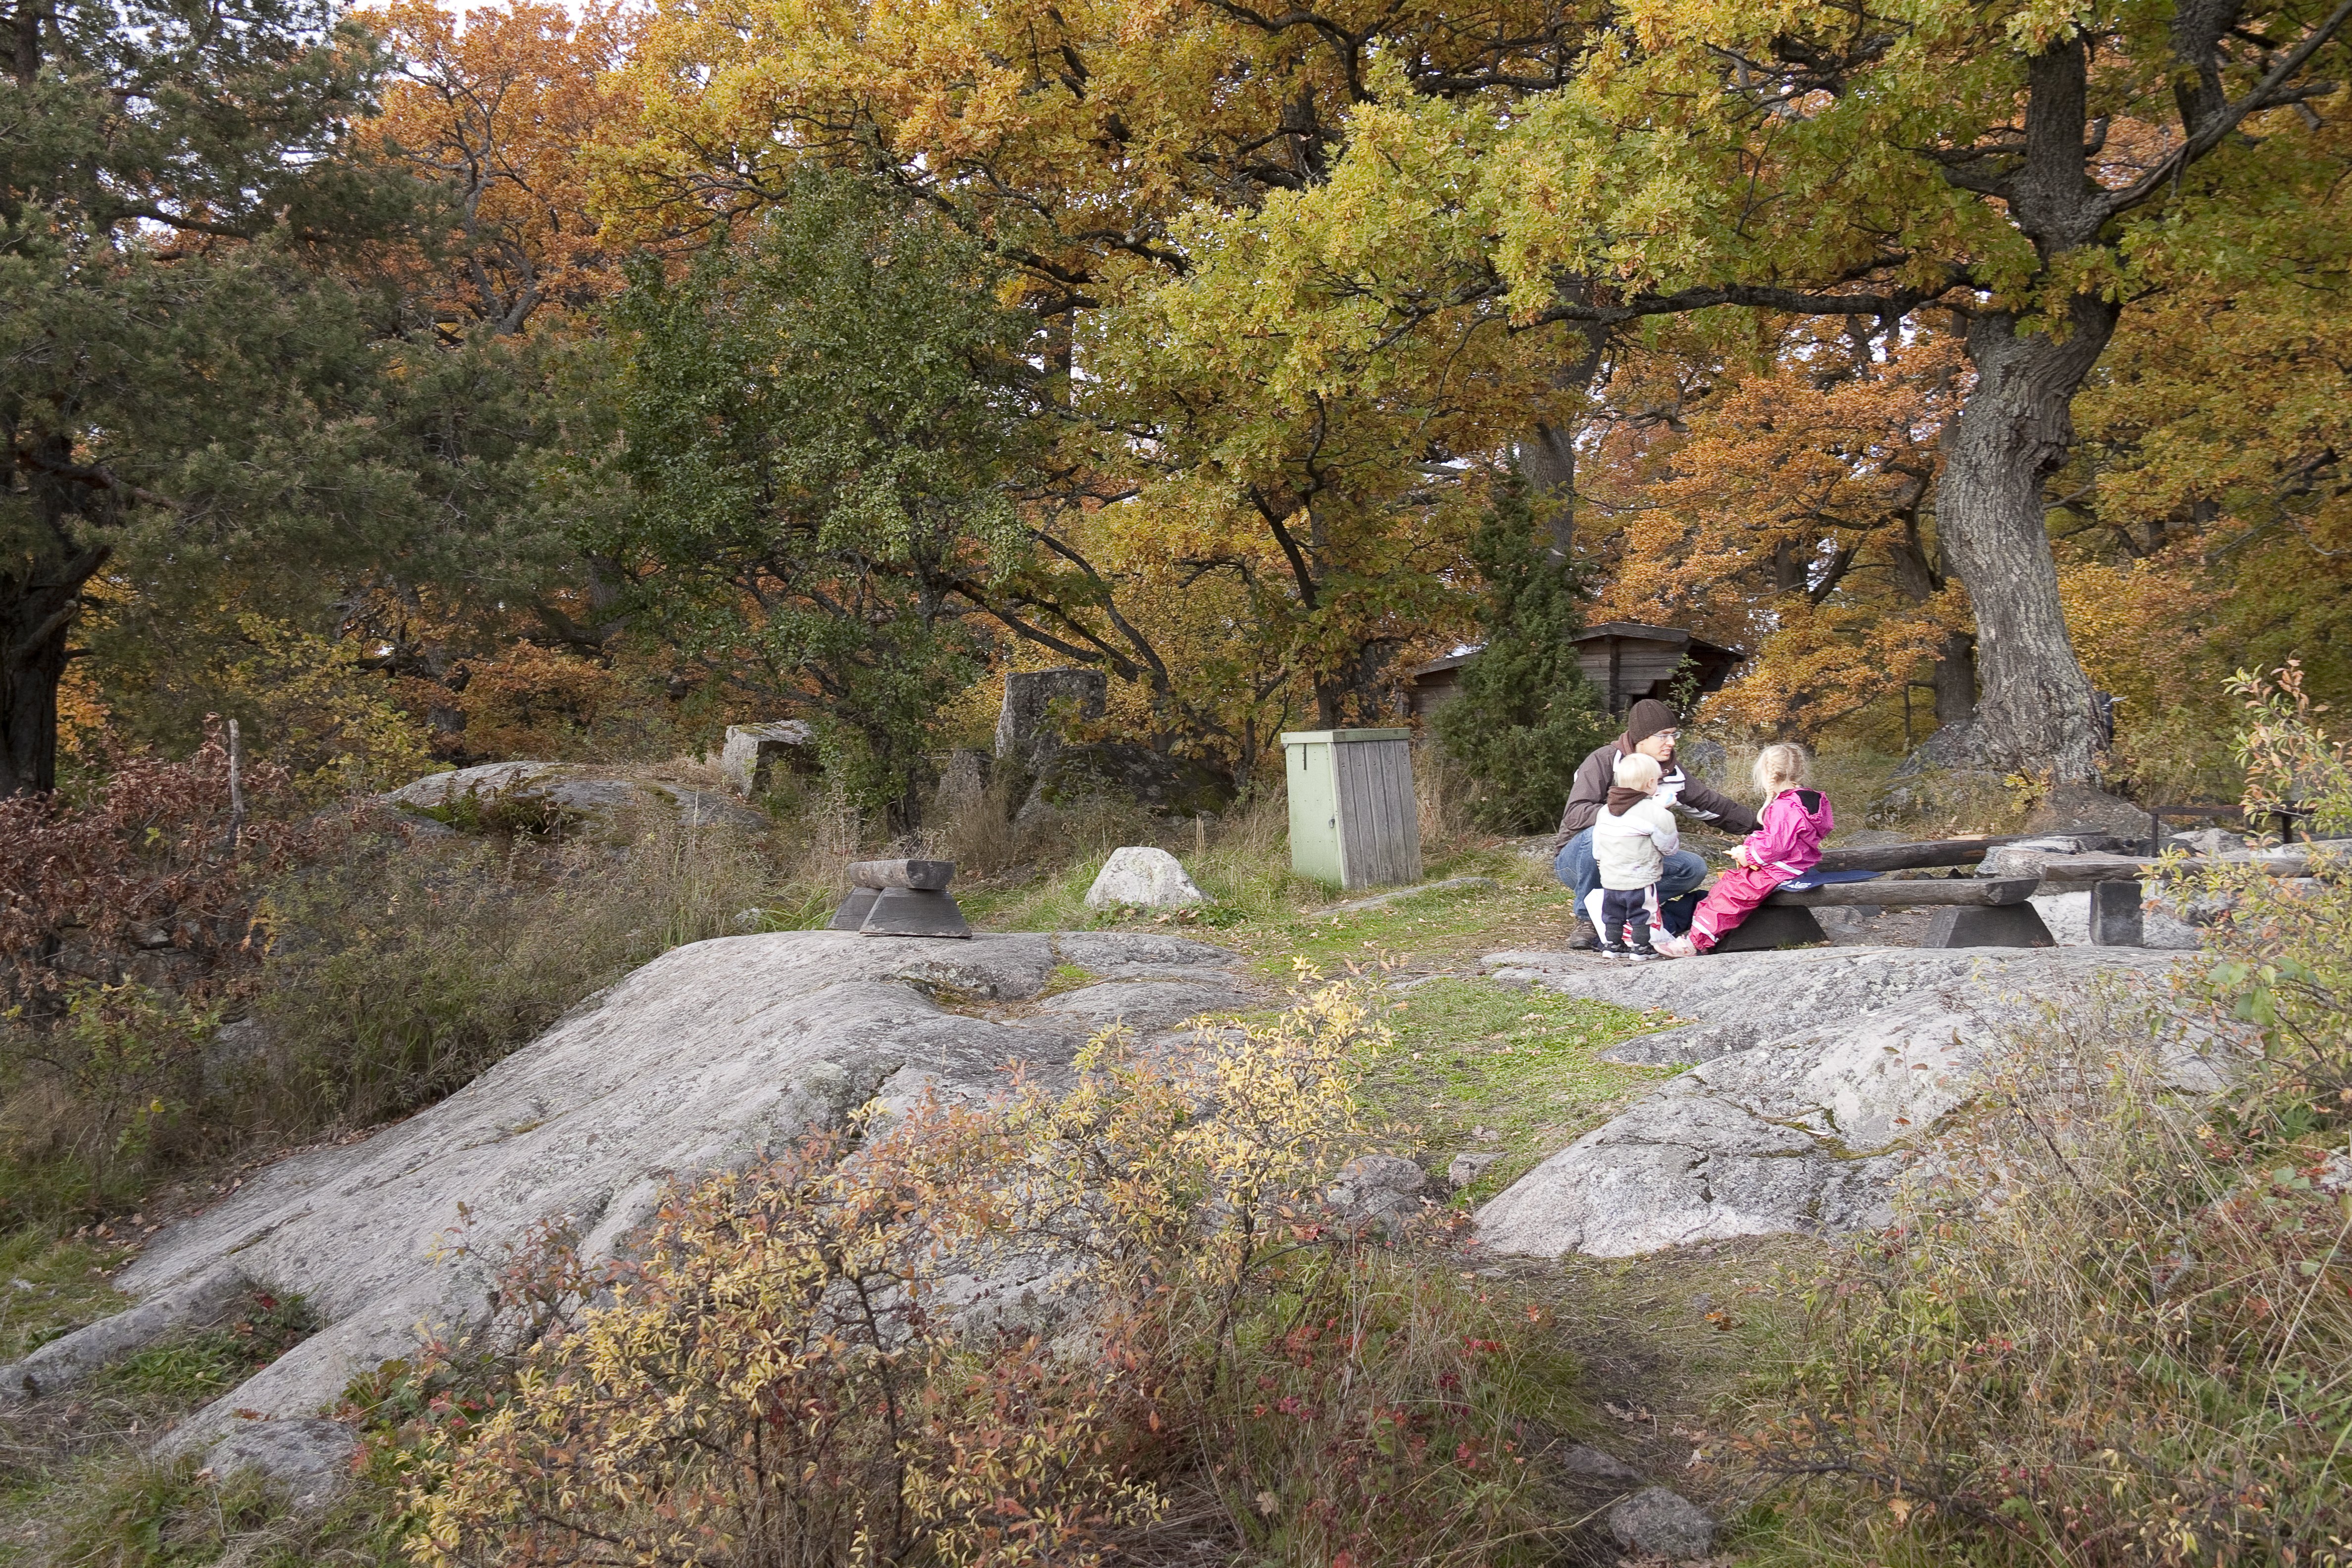 En vuxen och två barn sitter på en bänk vid en grillplats uppe på en stenhäll. Runtom är det gott om höga lövträd.